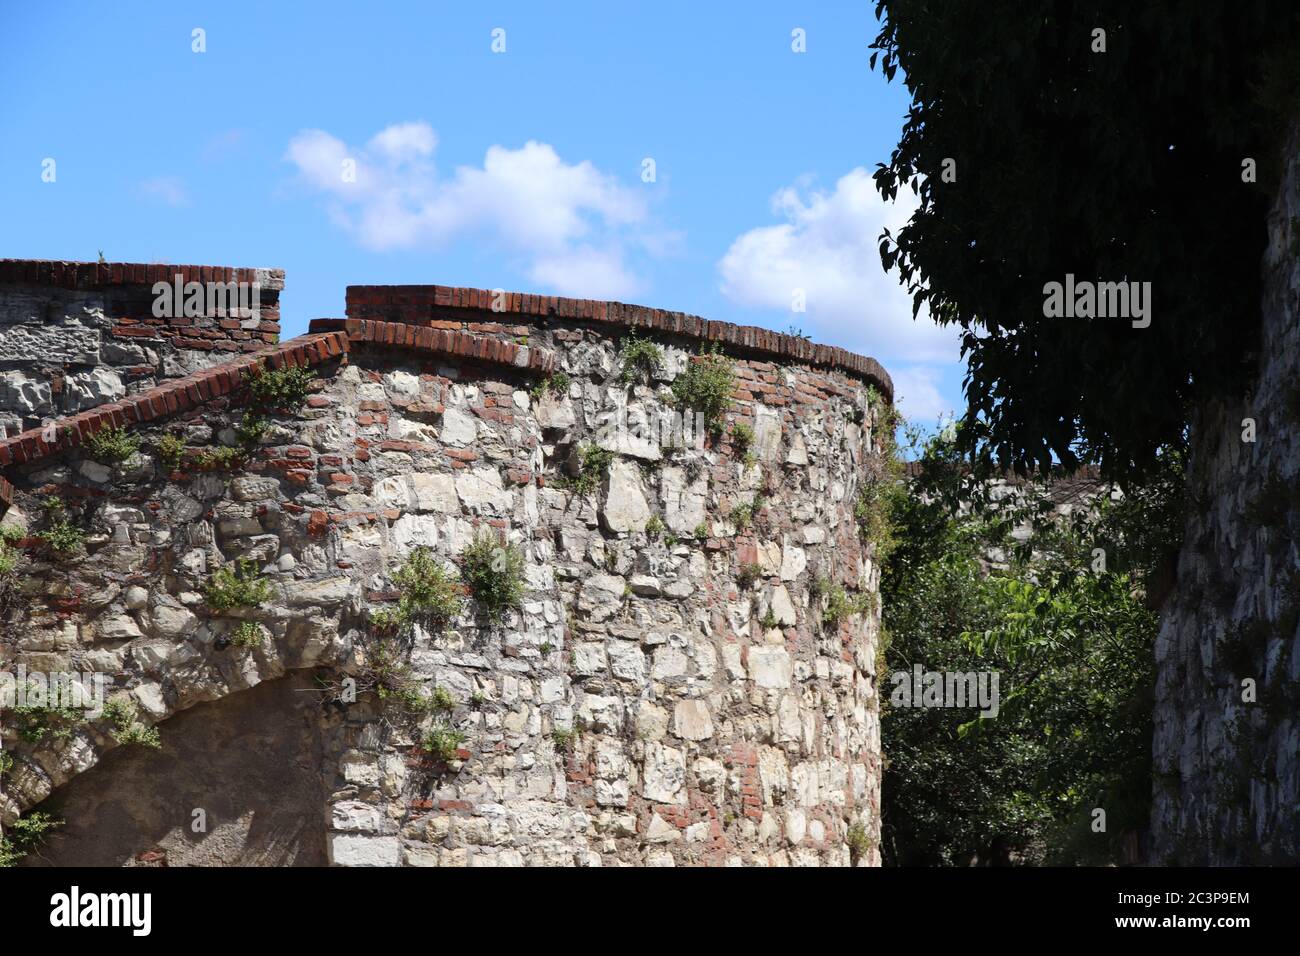 Ancien château de Brescia, une ville dans le nord de l'Italie Banque D'Images